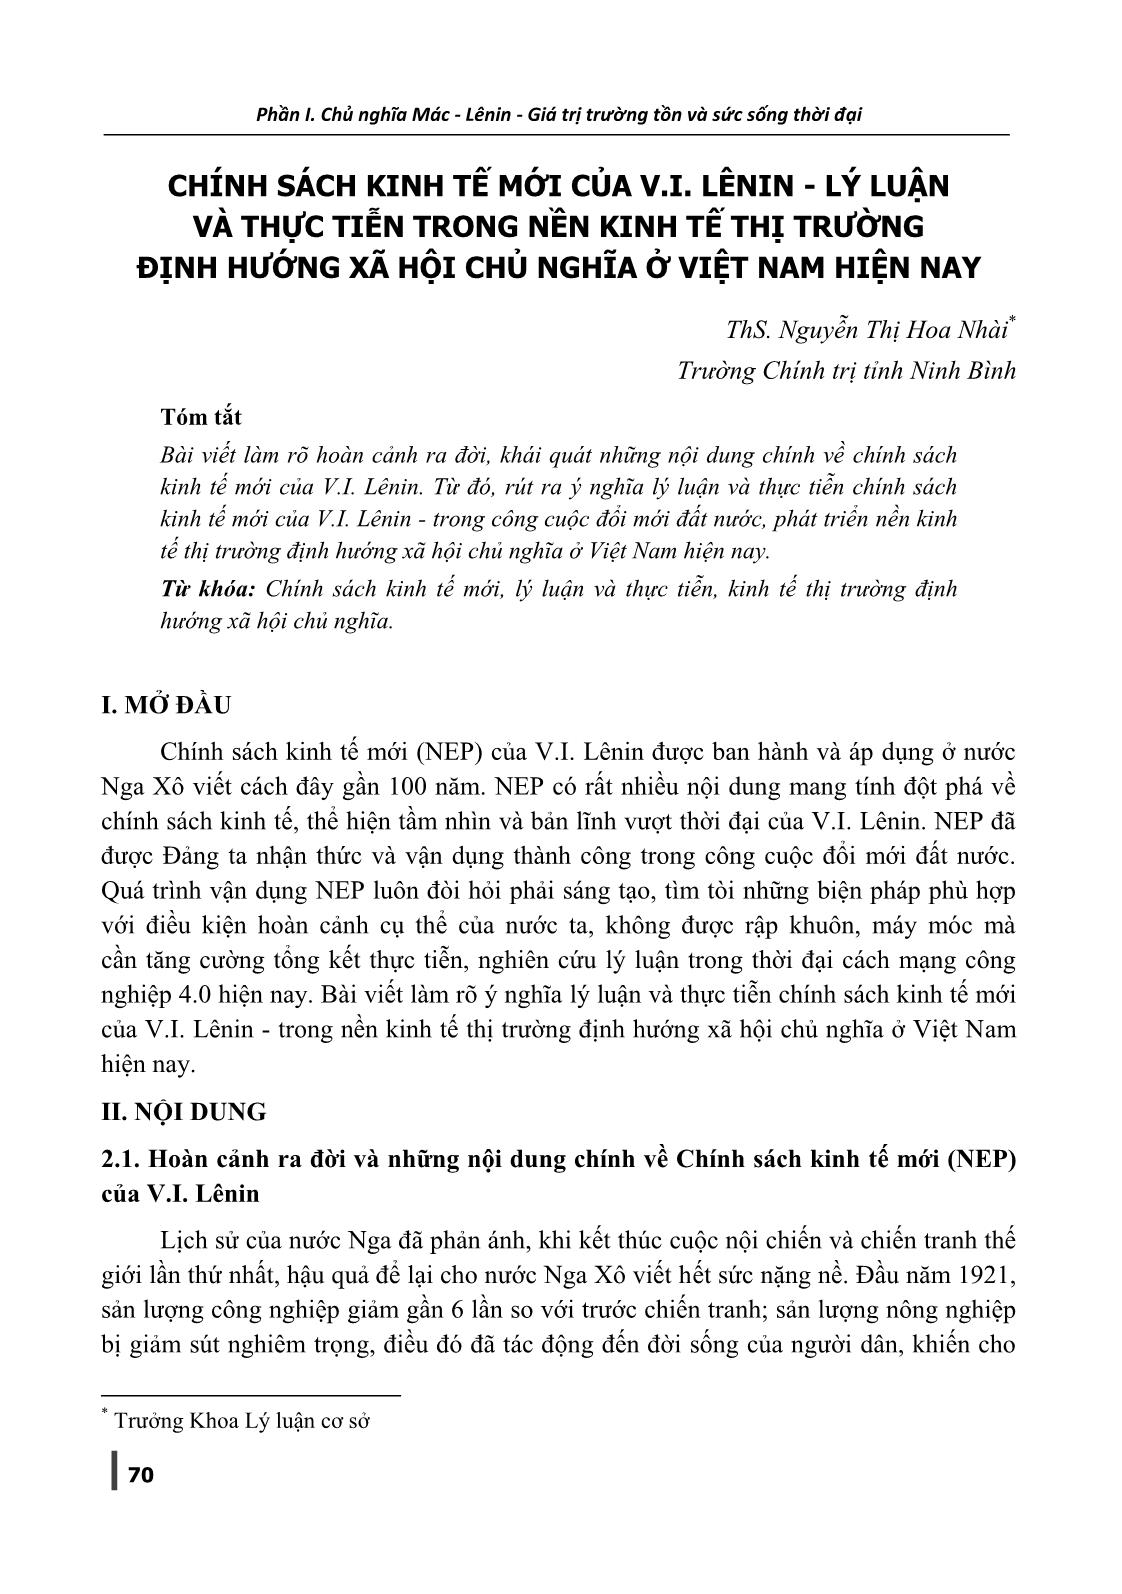 Chính sách kinh tế mới của V.I. Lênin - Lý luận và thực tiễn trong nền kinh tế thị trường định hướng xã hội chủ nghĩa ở Việt Nam hiện nay trang 1